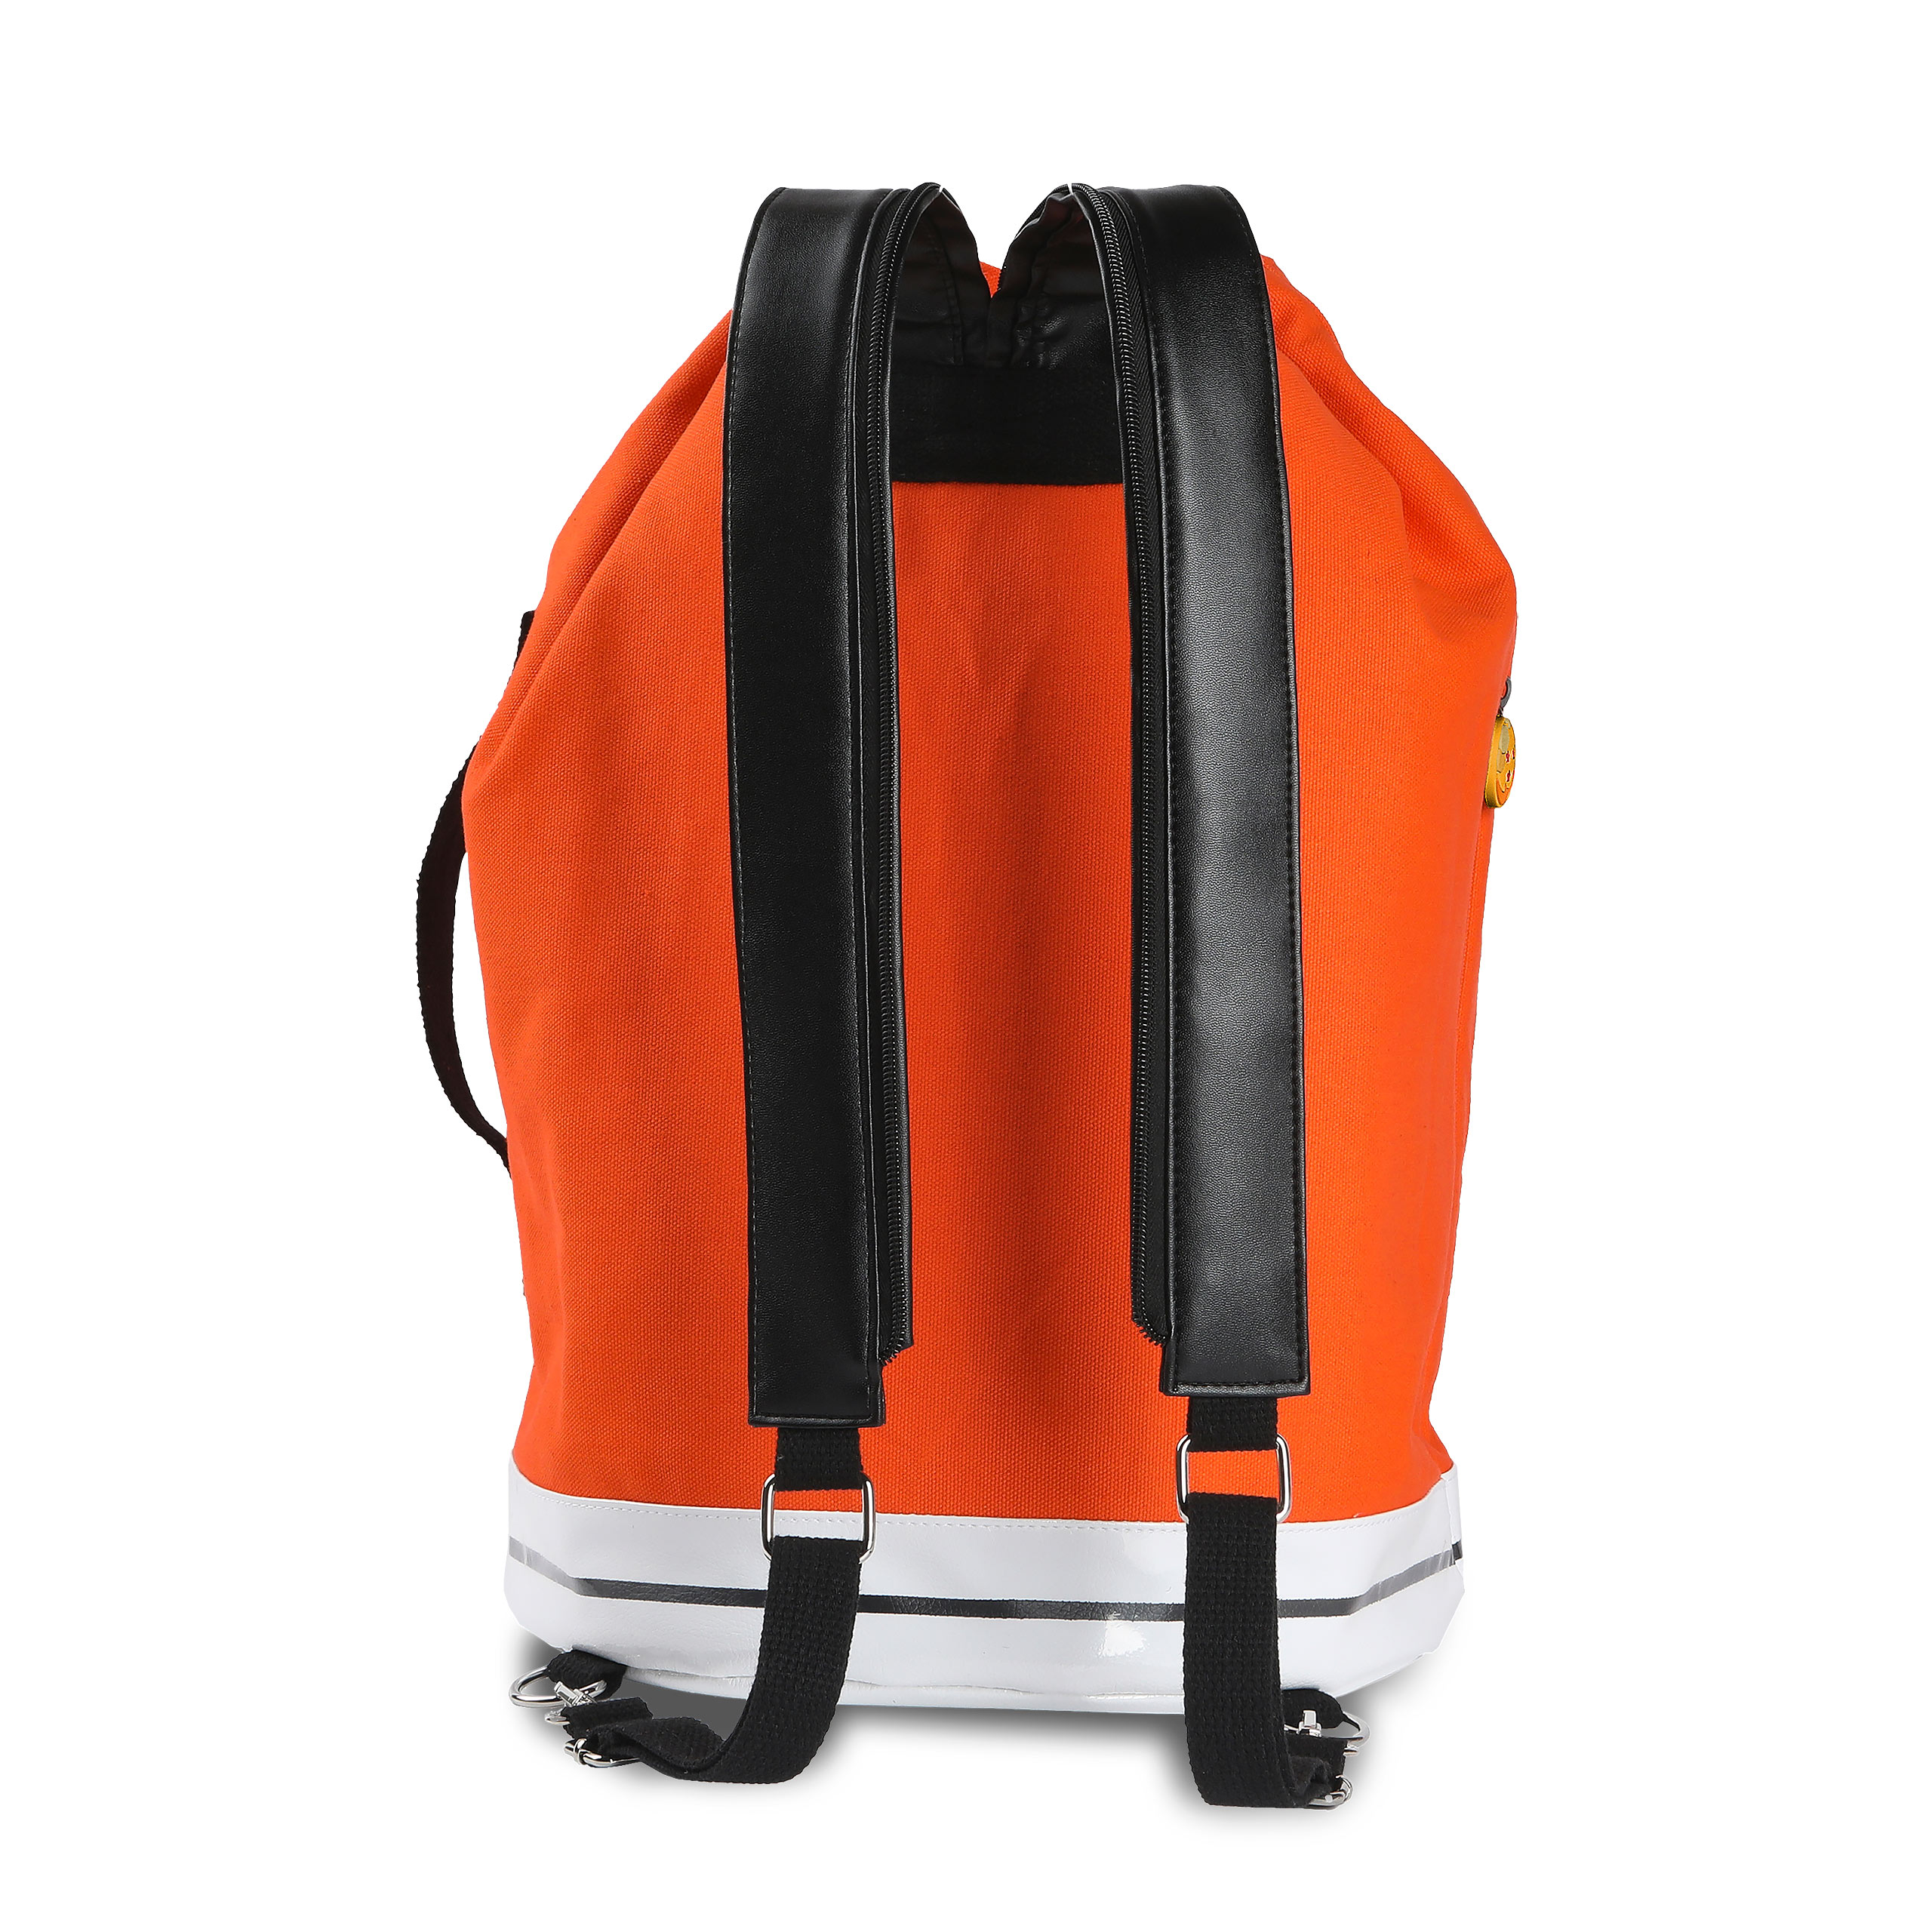 Dragon Ball - Goku Symbol Backpack